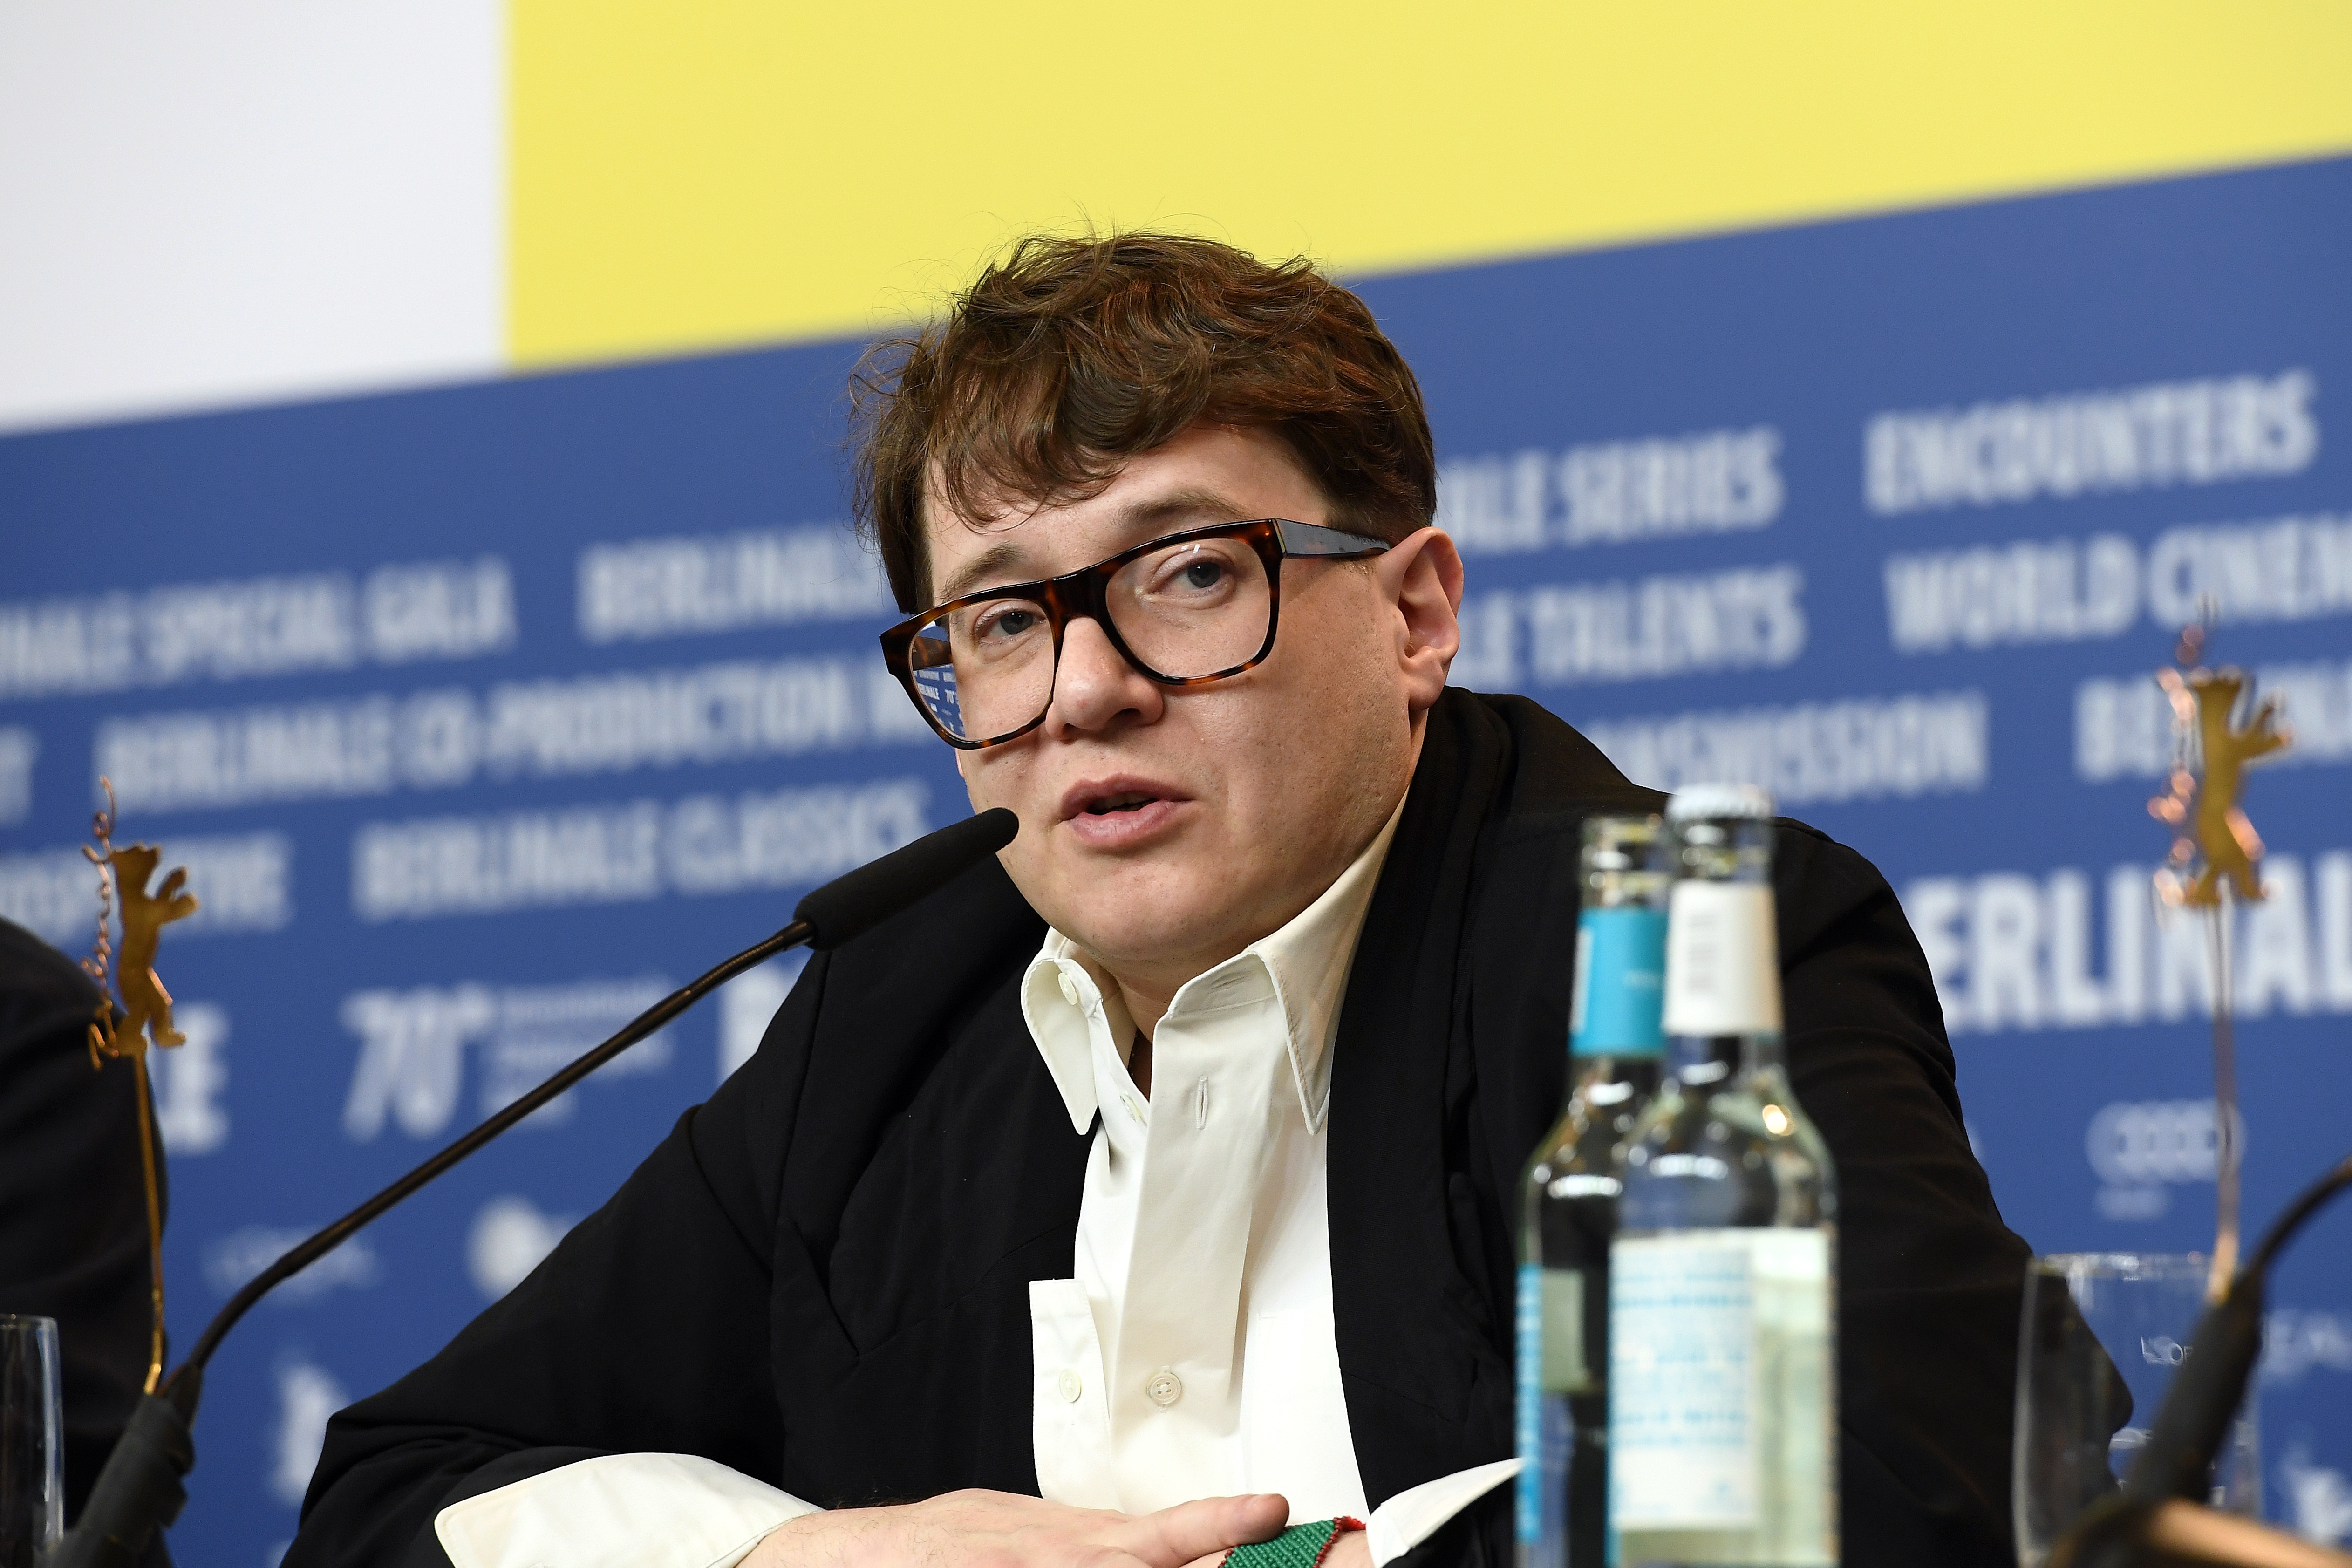  Ilya Khrzhanovskiy (Getty Images)